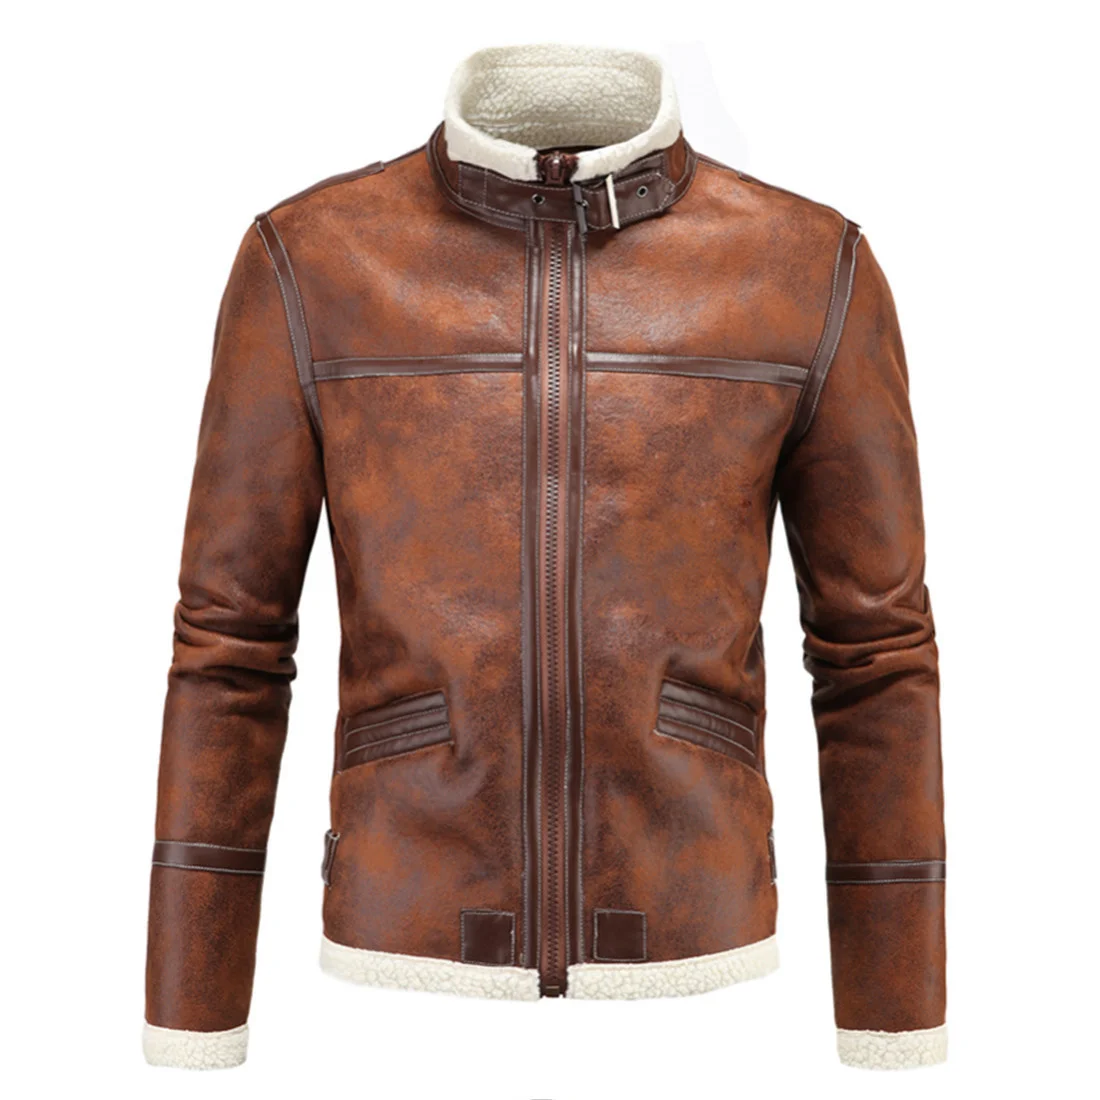 

Thicke Winter Men's Warm PU Jacket Fleece Lined Motorcycle Coat Windproof Parker Locomotive Leather Outwear for Male